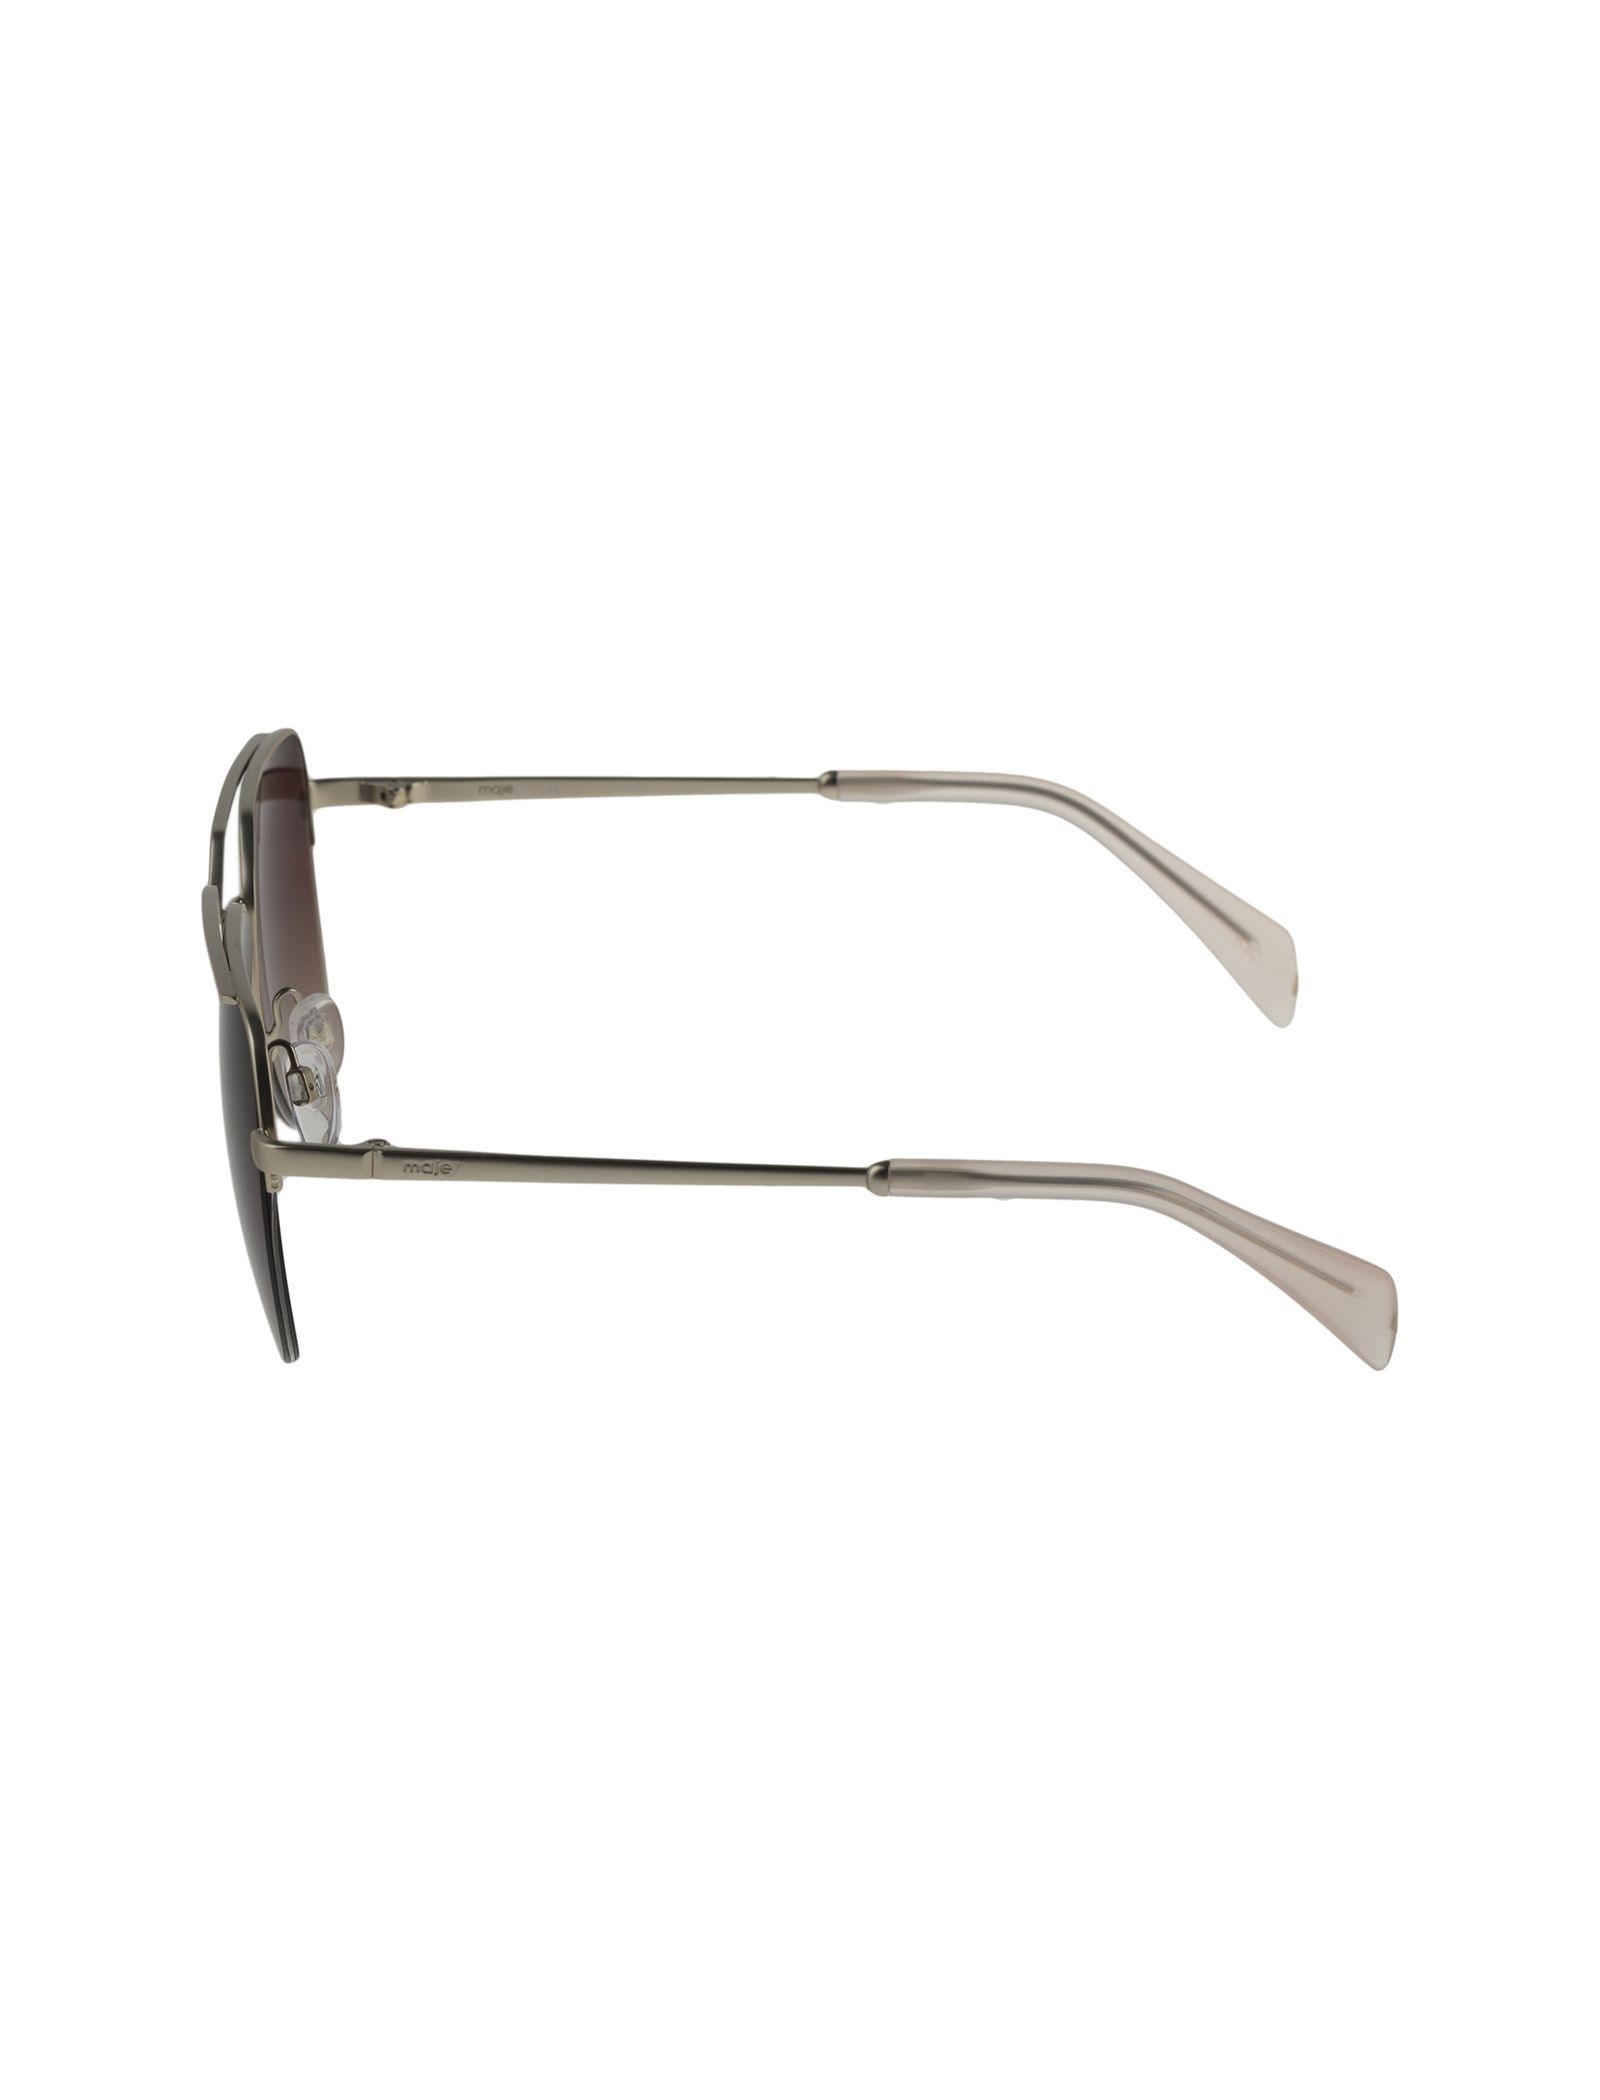 عینک آفتابی خلبانی زنانه - ماژ - صورتي و نقره اي - 4